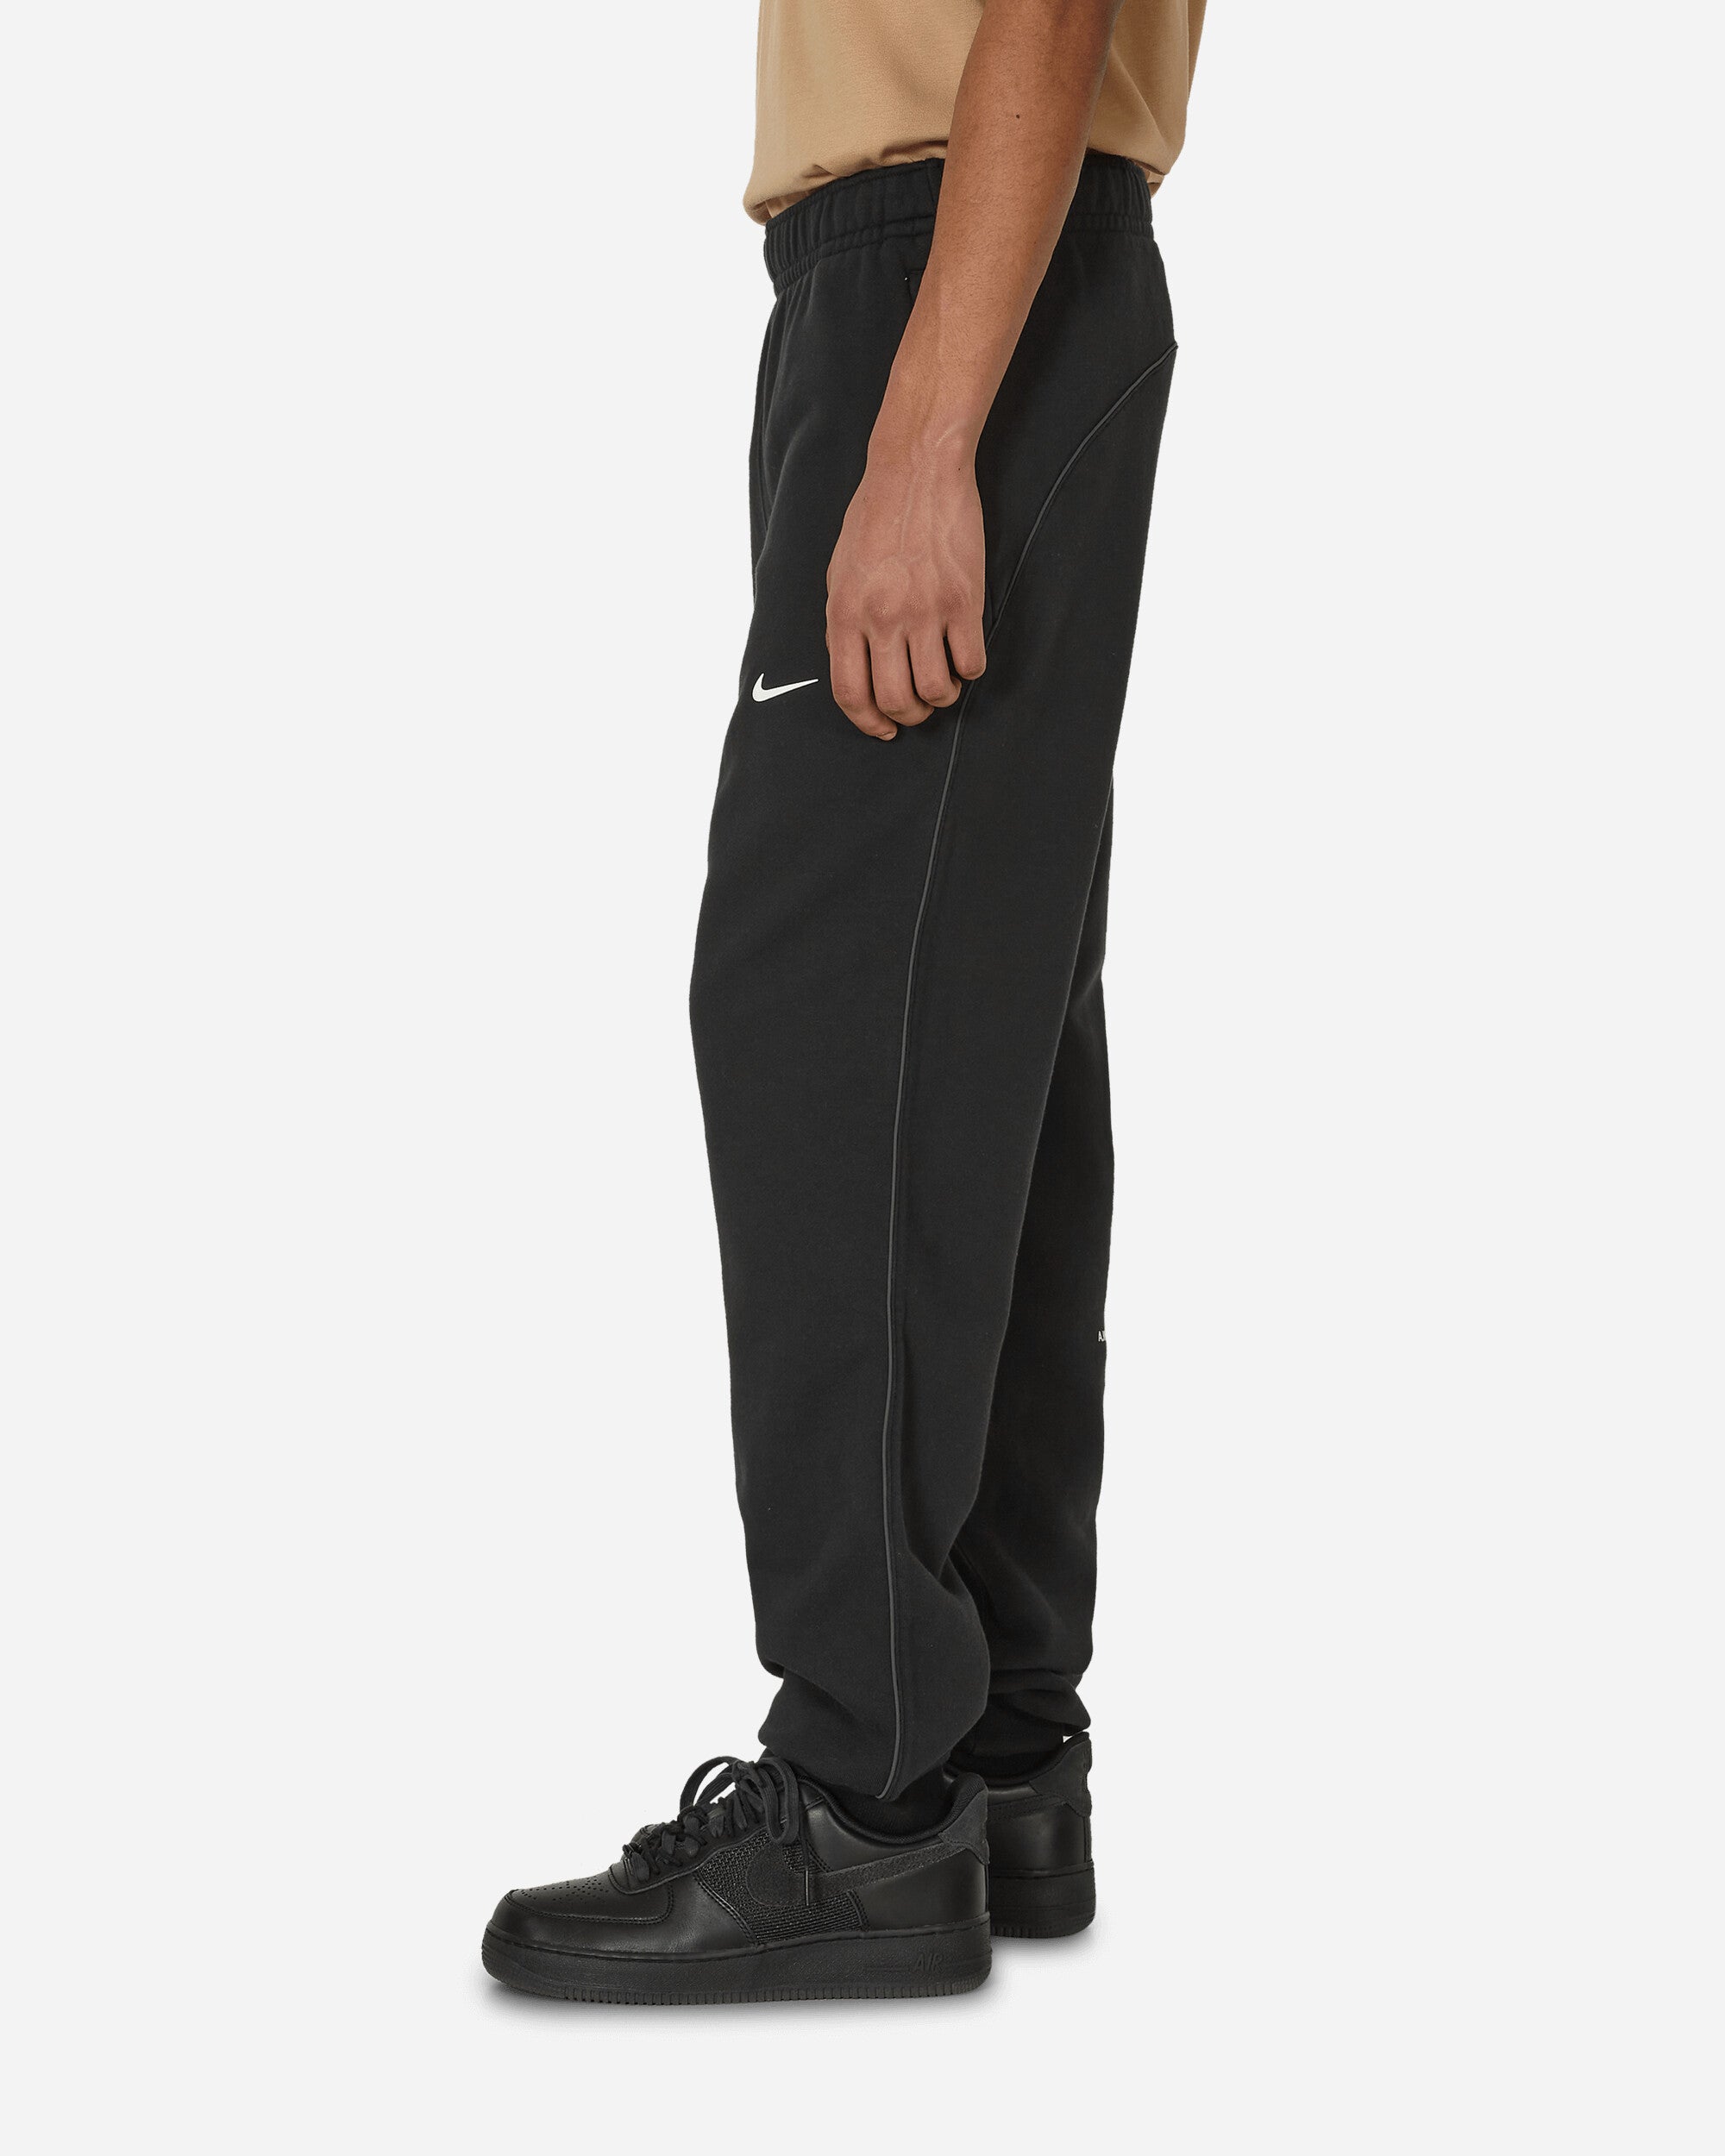 Nike M Nrg Nocta Cs Pant Flc Black/Black/White Pants Sweatpants FN7661-010